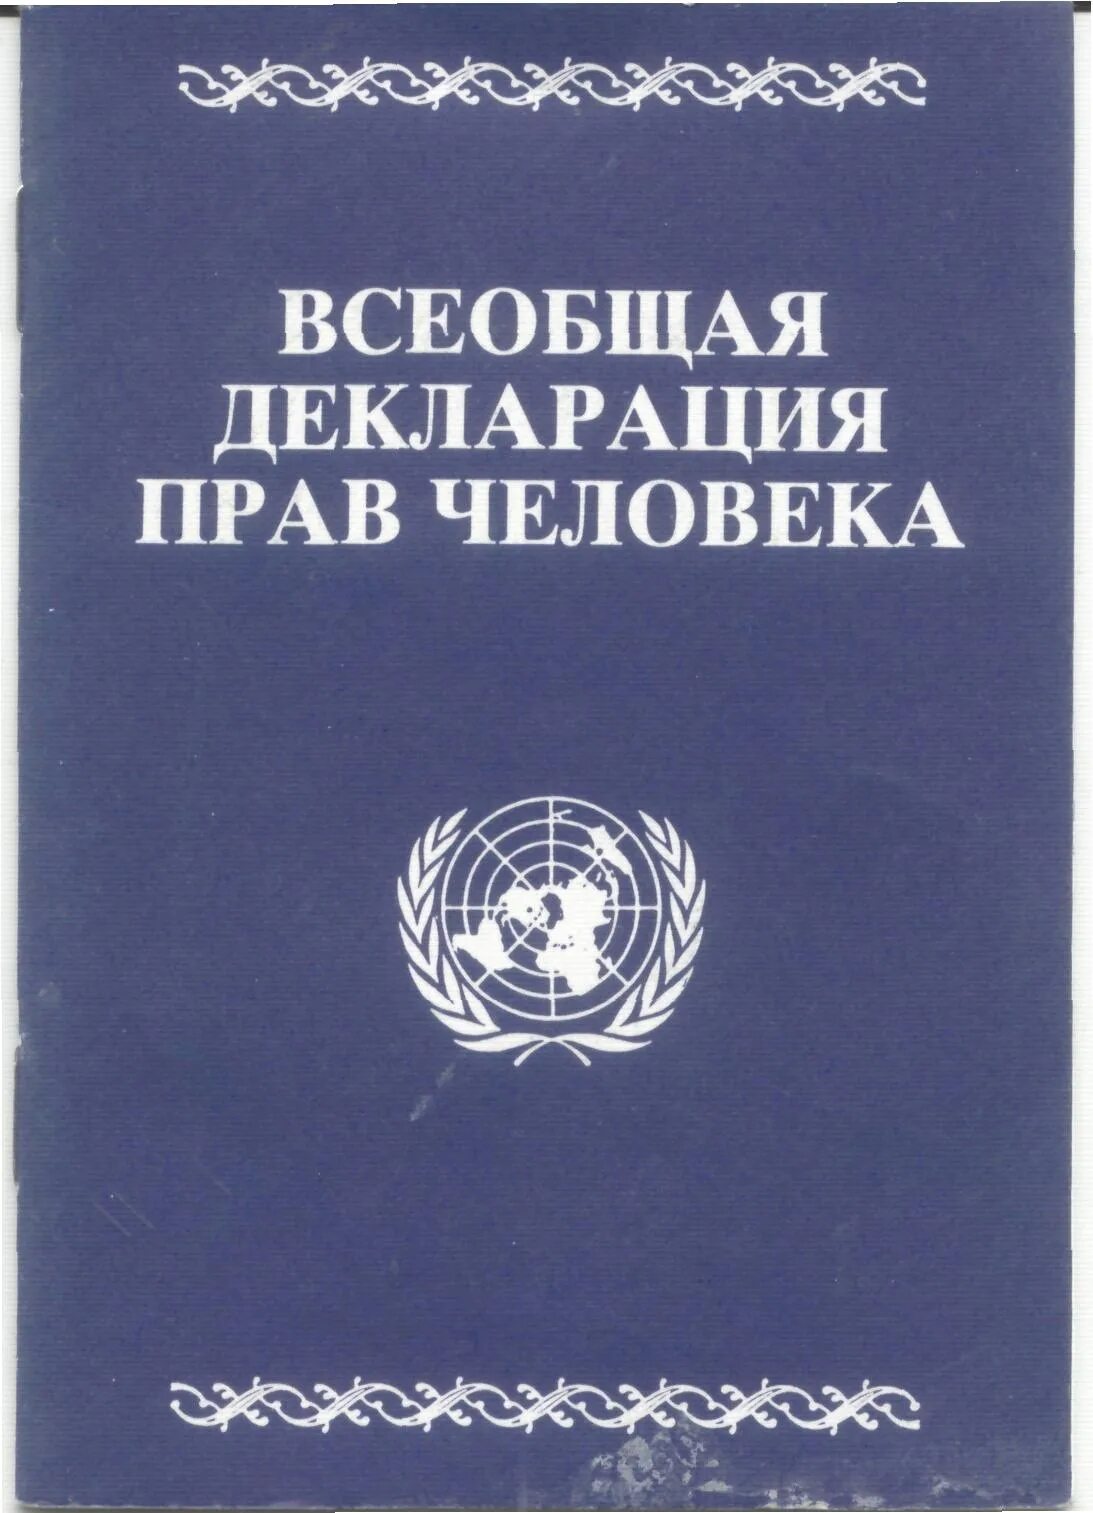 Всеобщая прав человека была. Всеобщая декларация прав человека 1948 г. Декларация прав человека ООН 1948. Всеобщая декларация прав человека 10 декабря 1948 года. Декларация прав человека книга.